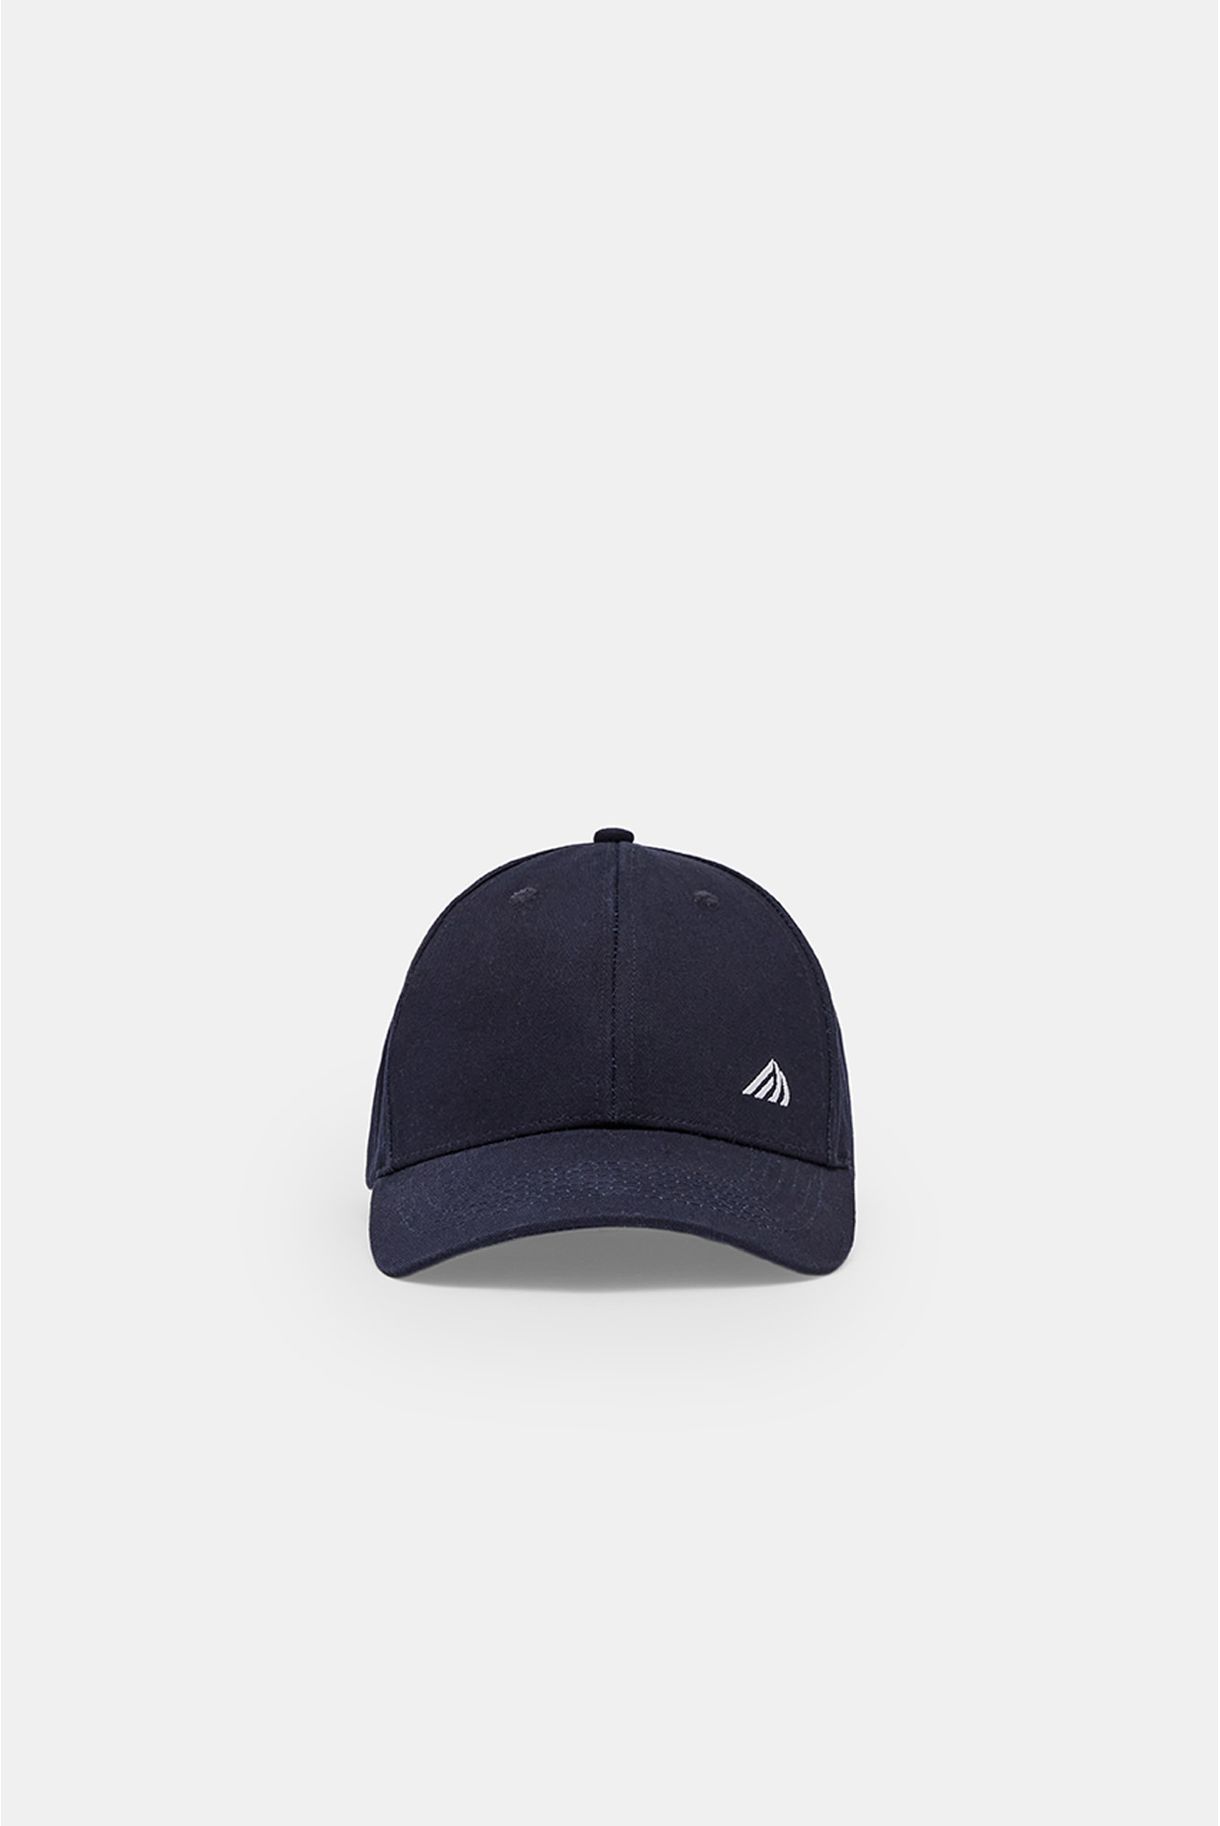 BASIC CAP